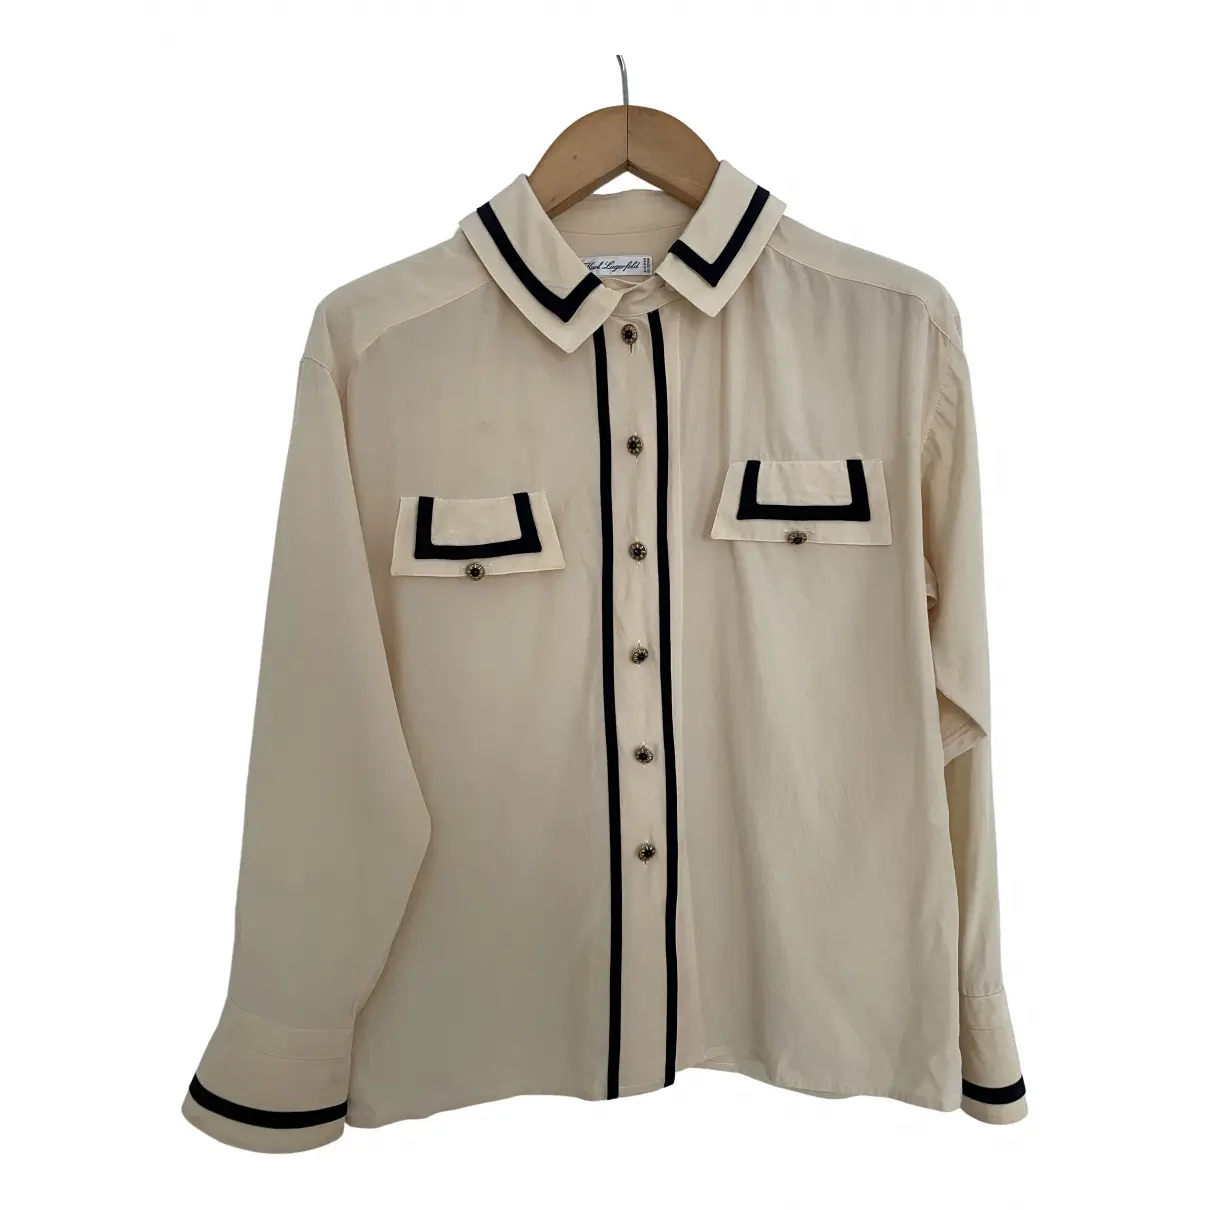 Silk blouse Karl Lagerfeld - Vintage